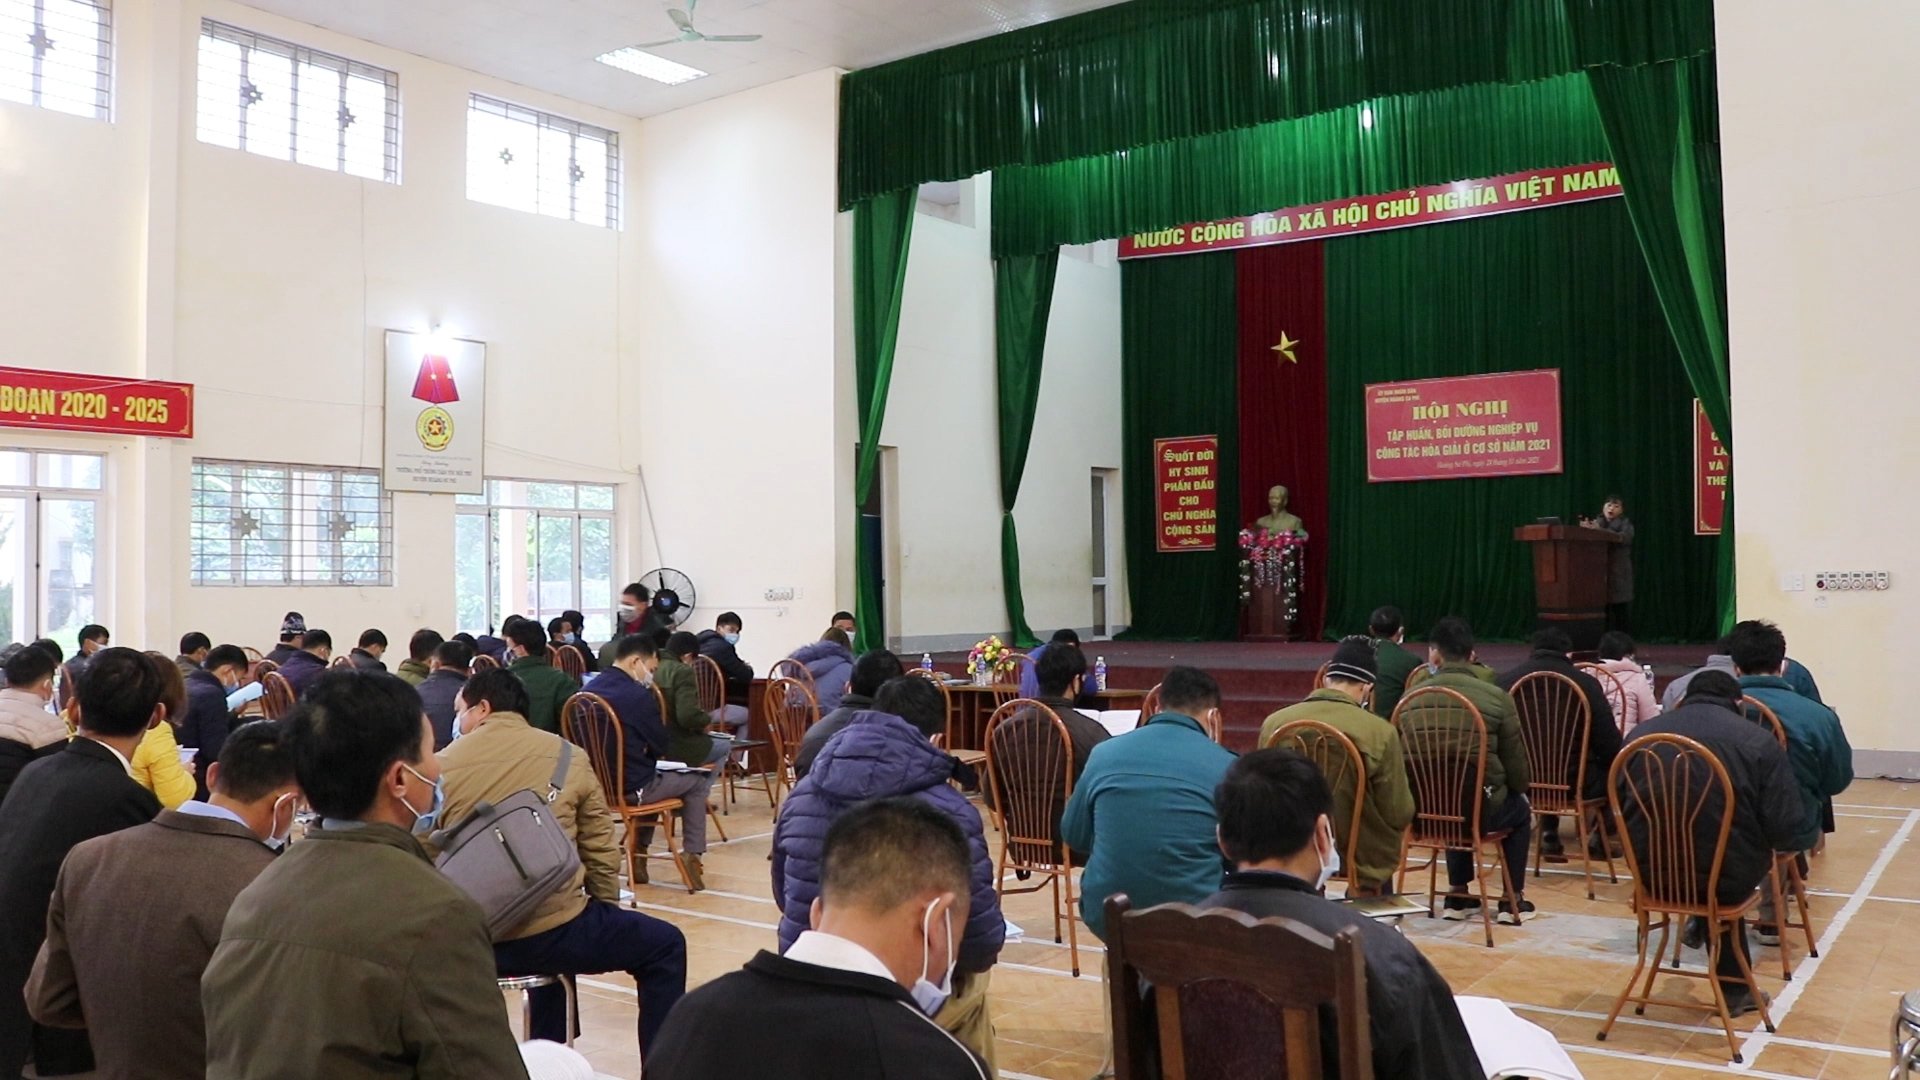 UBND huyện Hoàng Su Phì tổ chức hội nghị tập huấn bồi dưỡng nghiệp vụ công tác hoà giải ở cơ sở